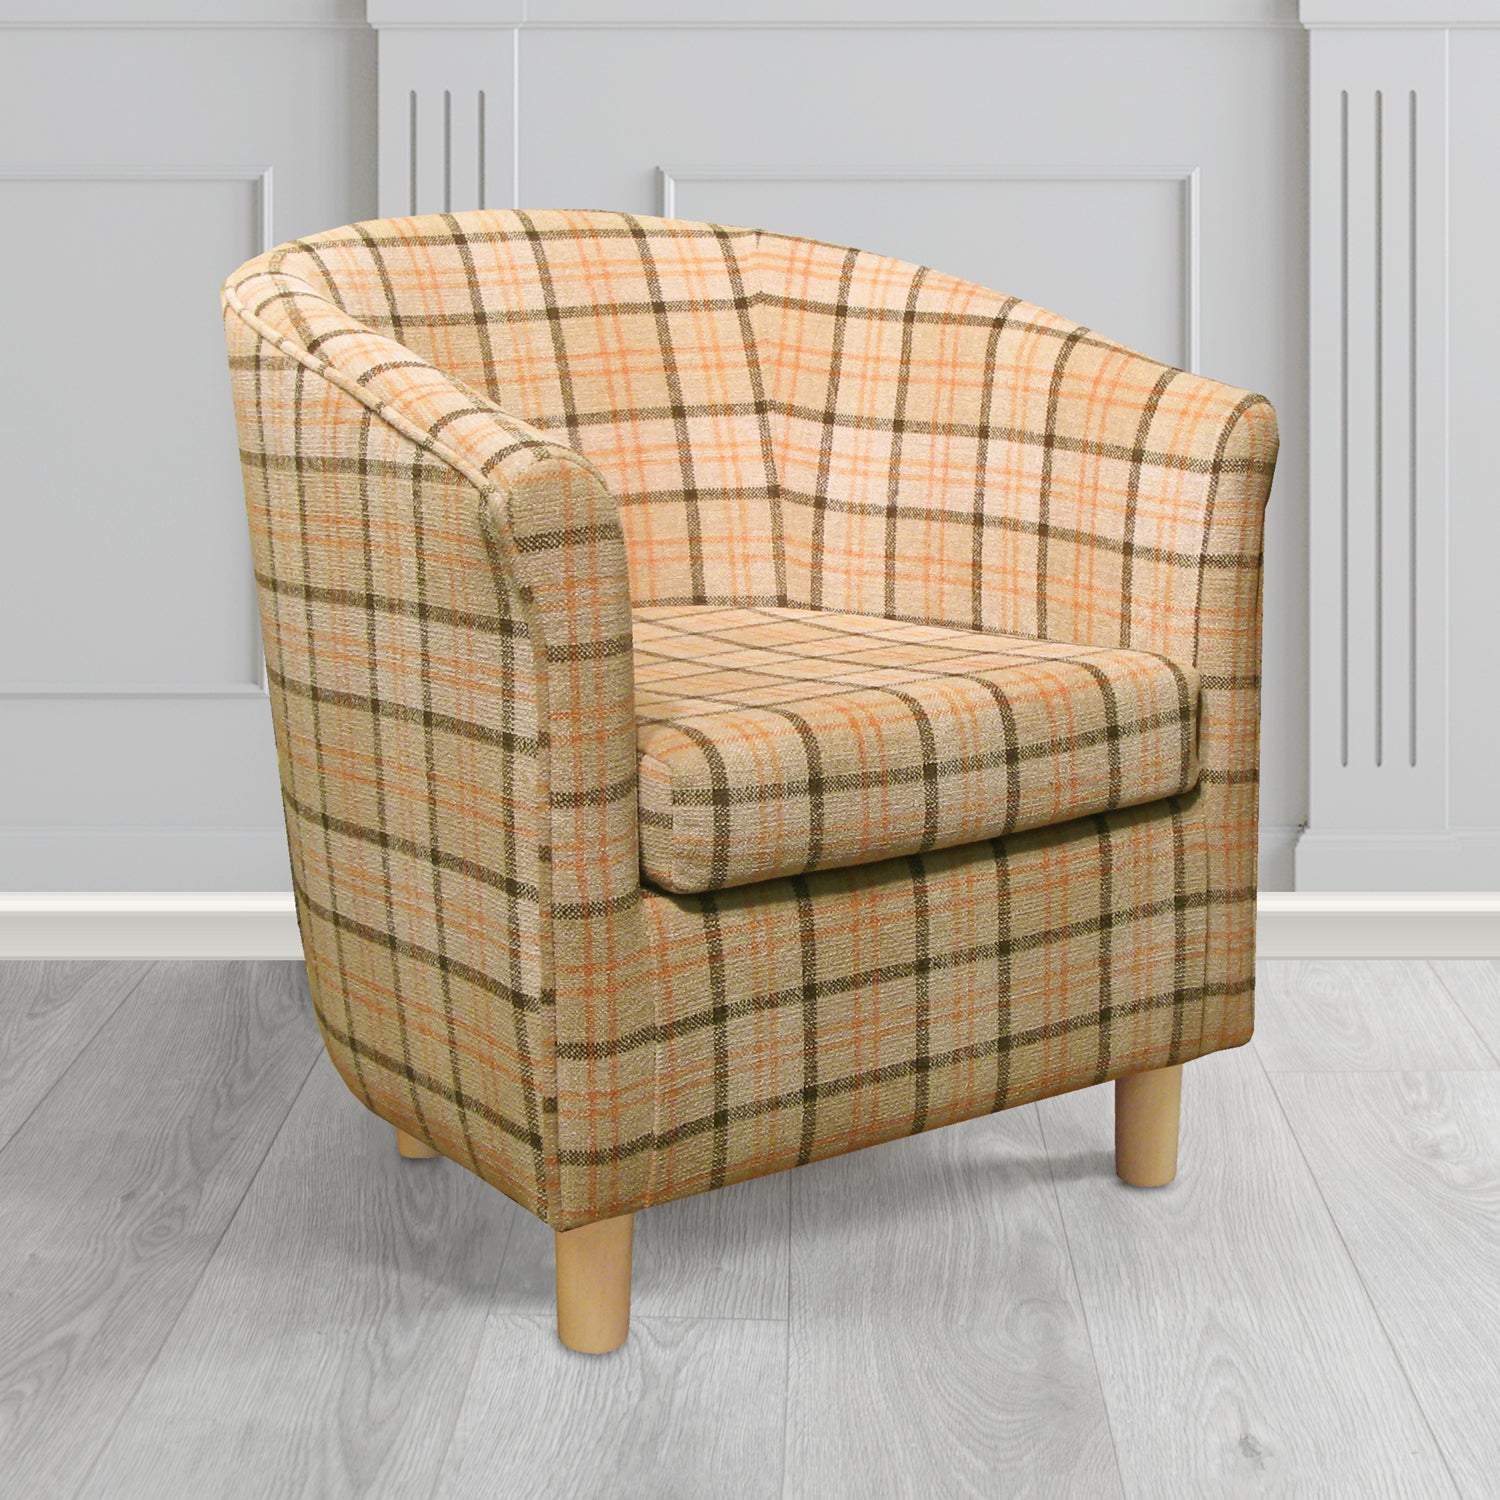 Tuscany Tub Chair in Lana Dune Tartan LAN1257 Crib 5 Fabric